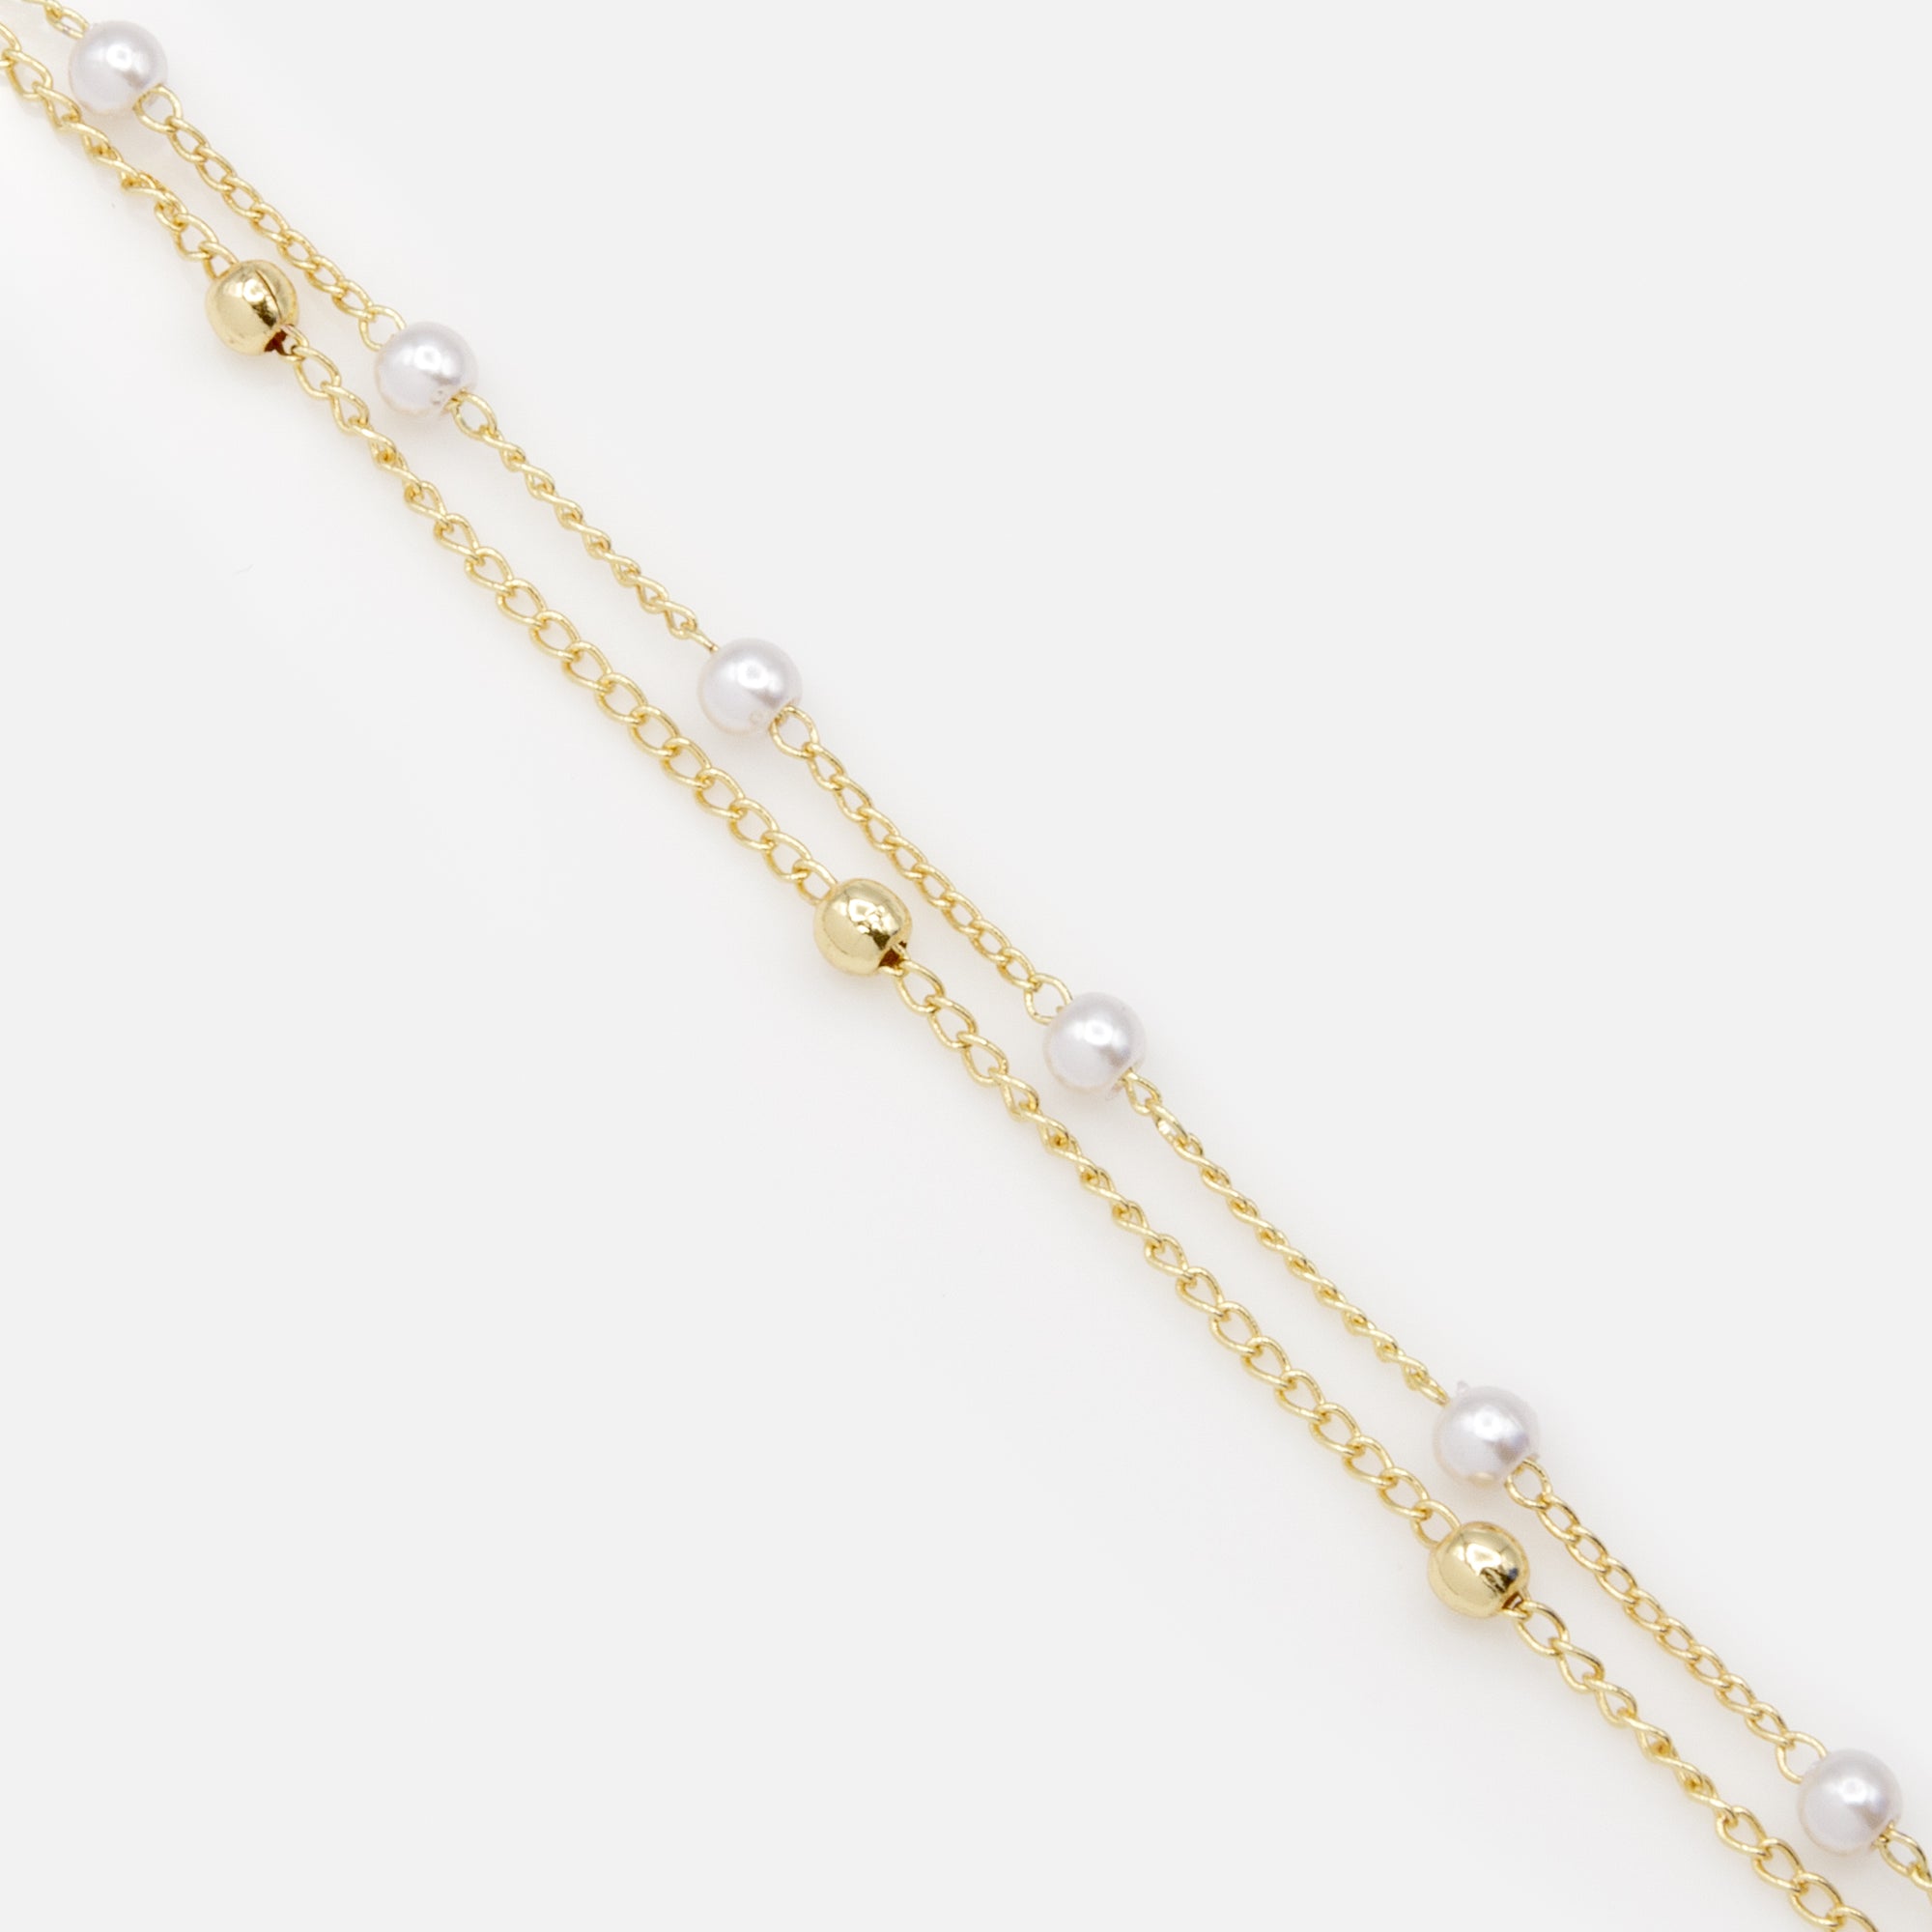 Bracelet doré à double chaîne avec perles et billes délicates dorées